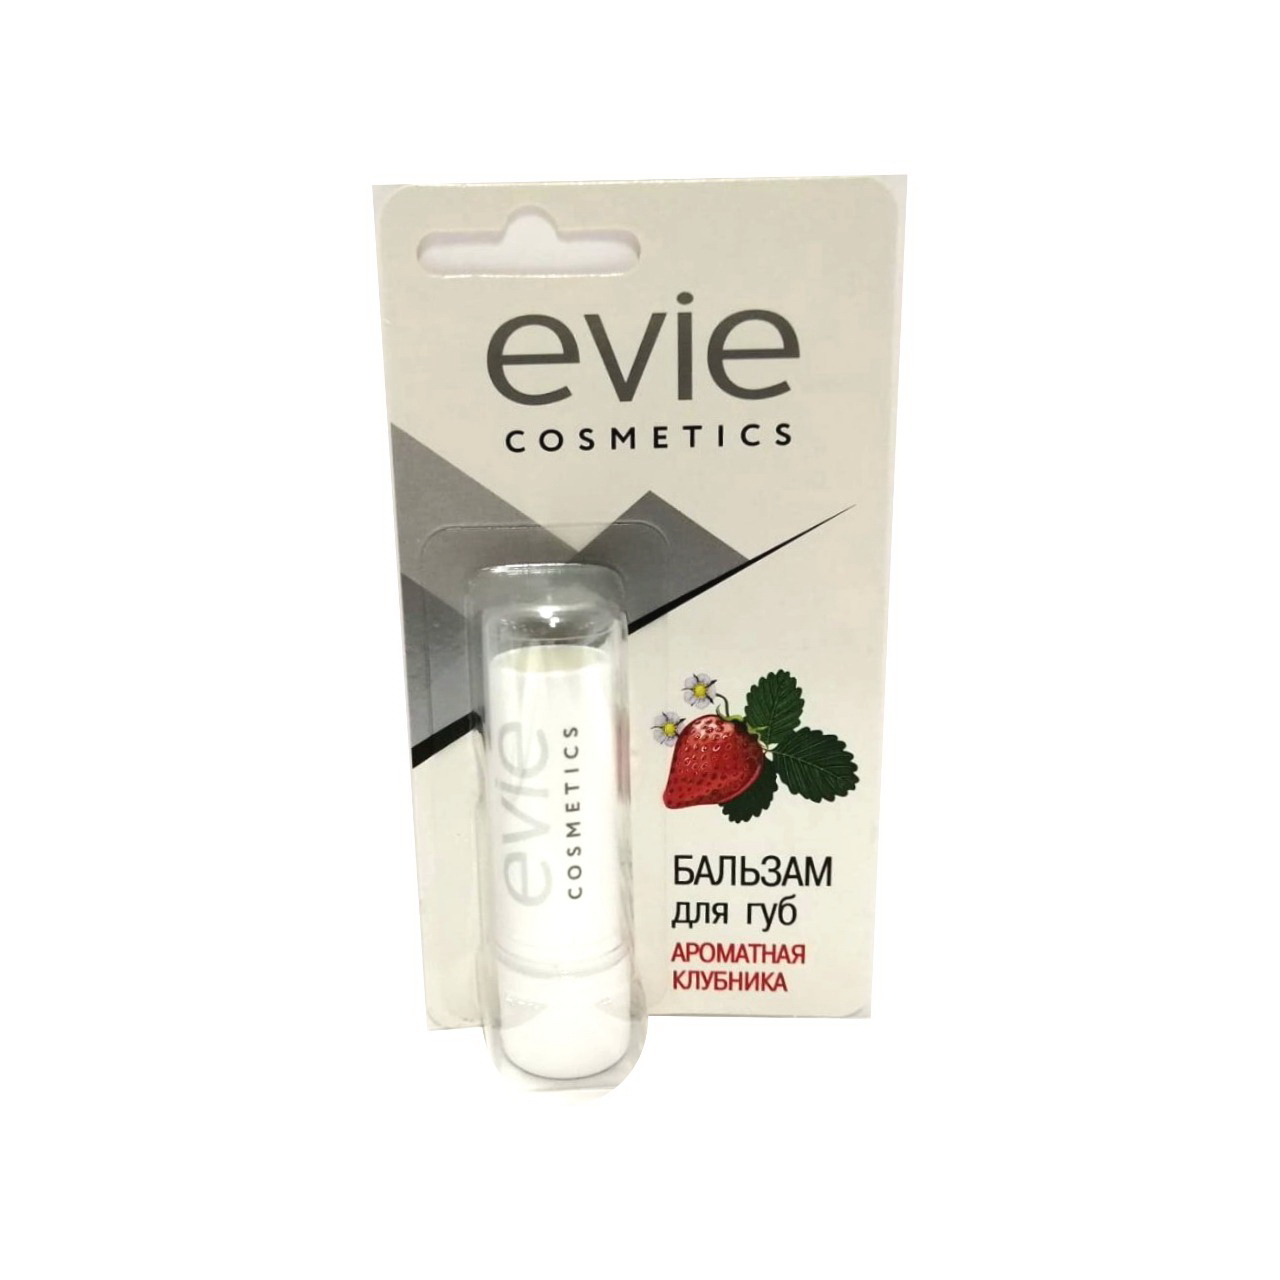 Evie cosmetics бальзам для губ ароматная клубника 3,7г